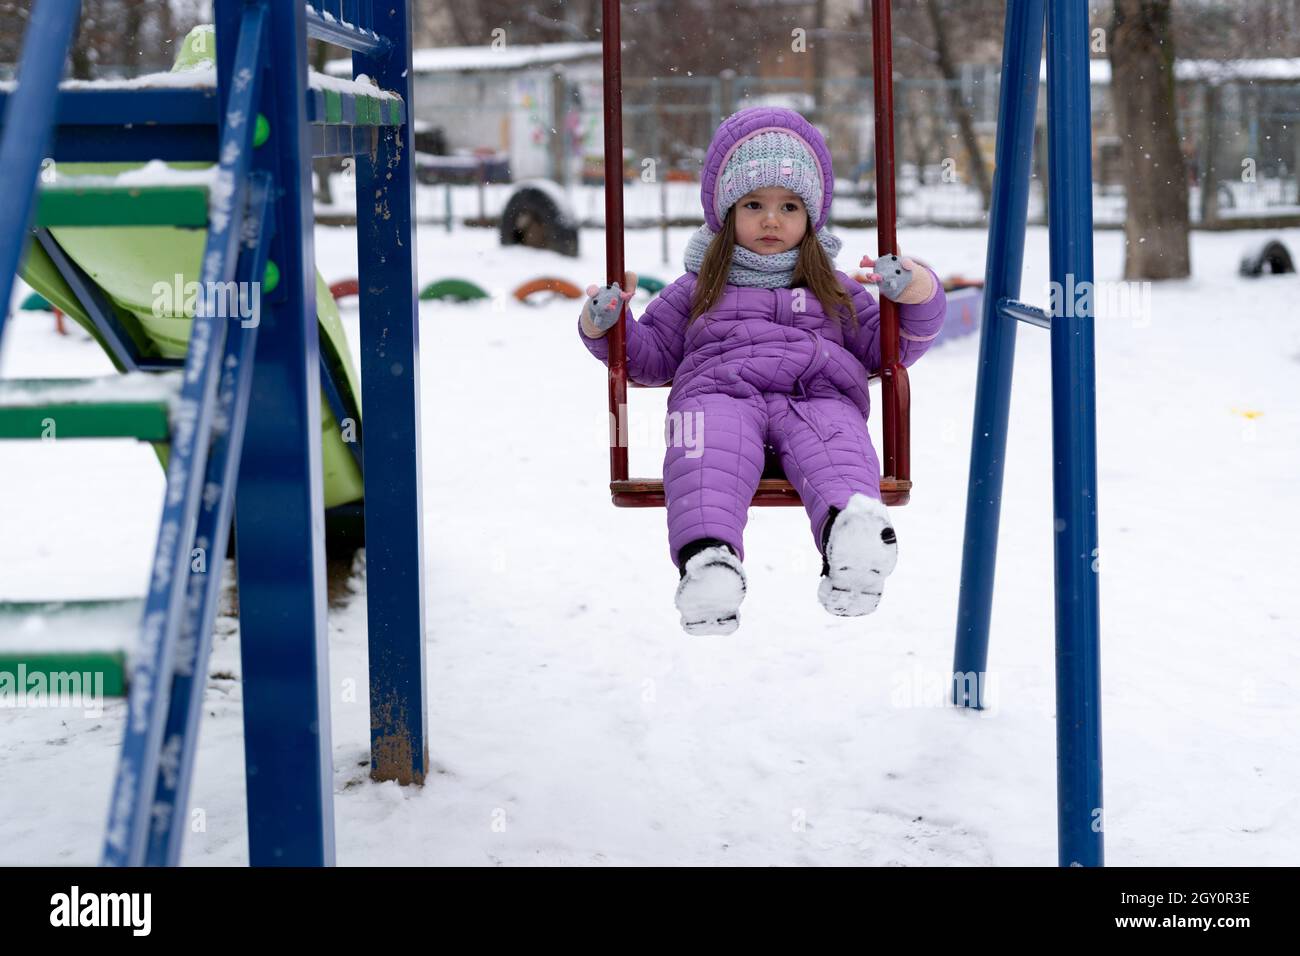 Kinderspielplatz im Winter. Ein kleines Mädchen fährt während eines Schneefalls auf einer Schaukel. Stockfoto